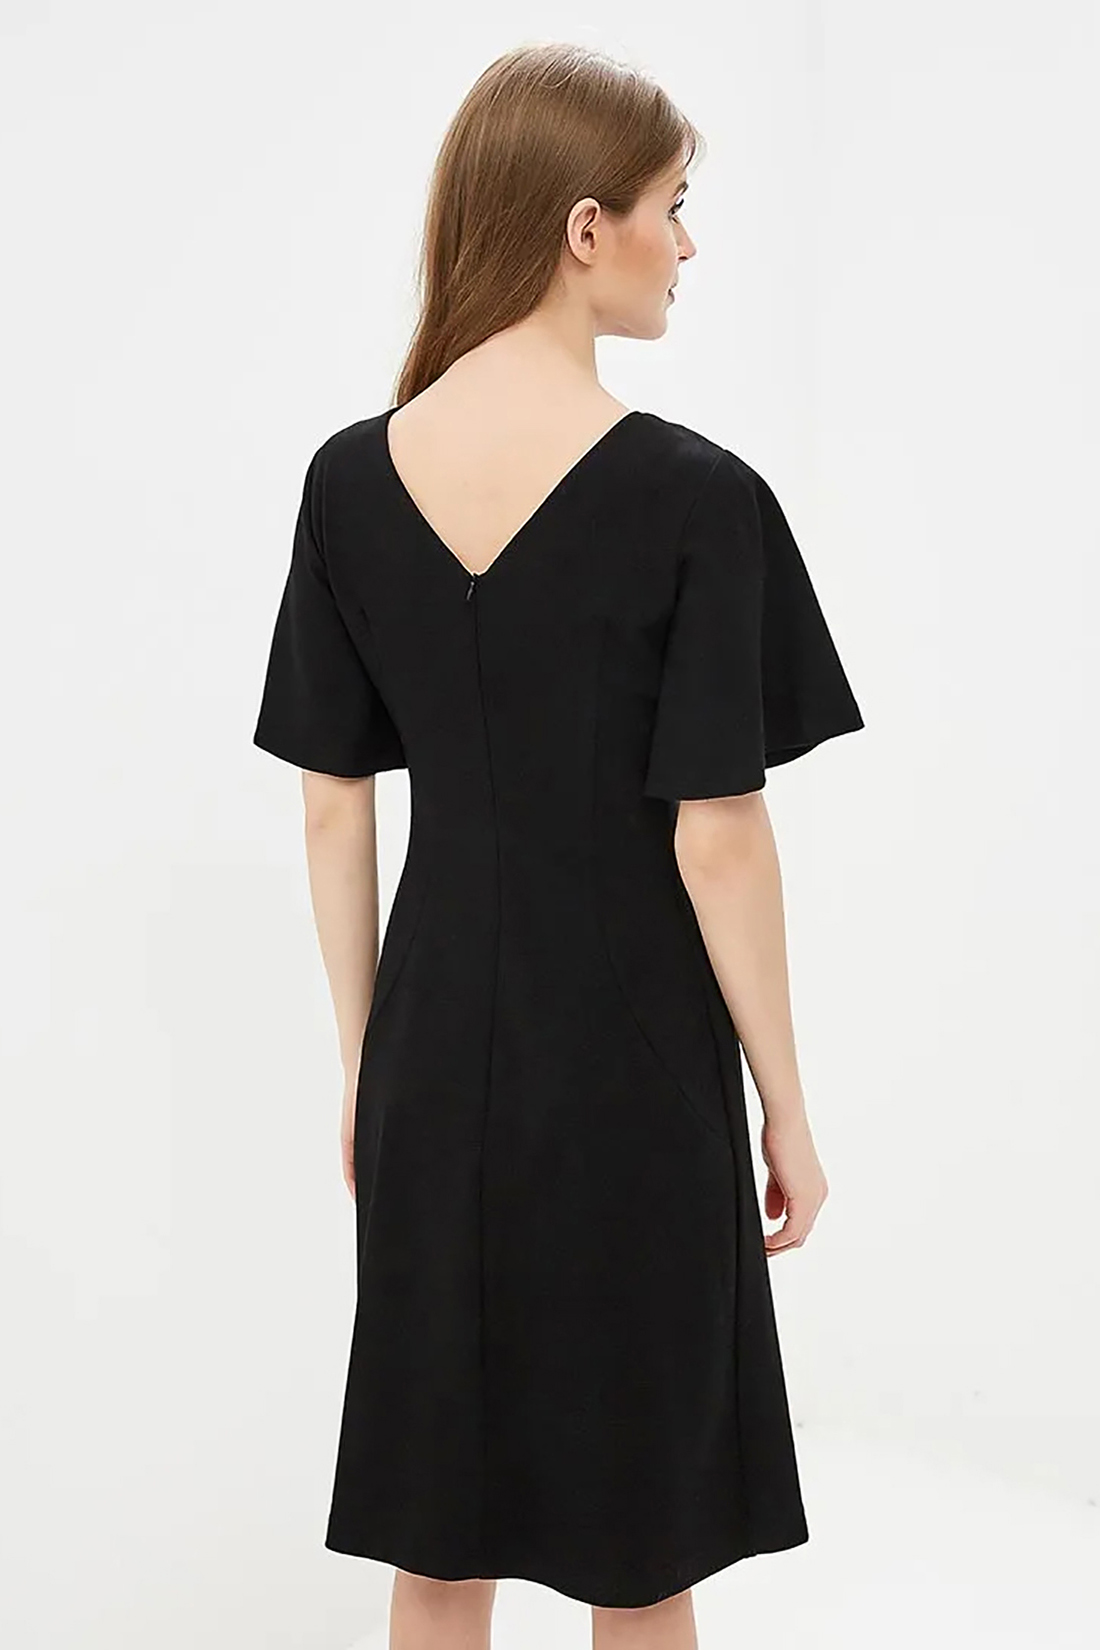 Платье с вырезом на спине (арт. baon B459028), размер XXL, цвет черный Платье с вырезом на спине (арт. baon B459028) - фото 2